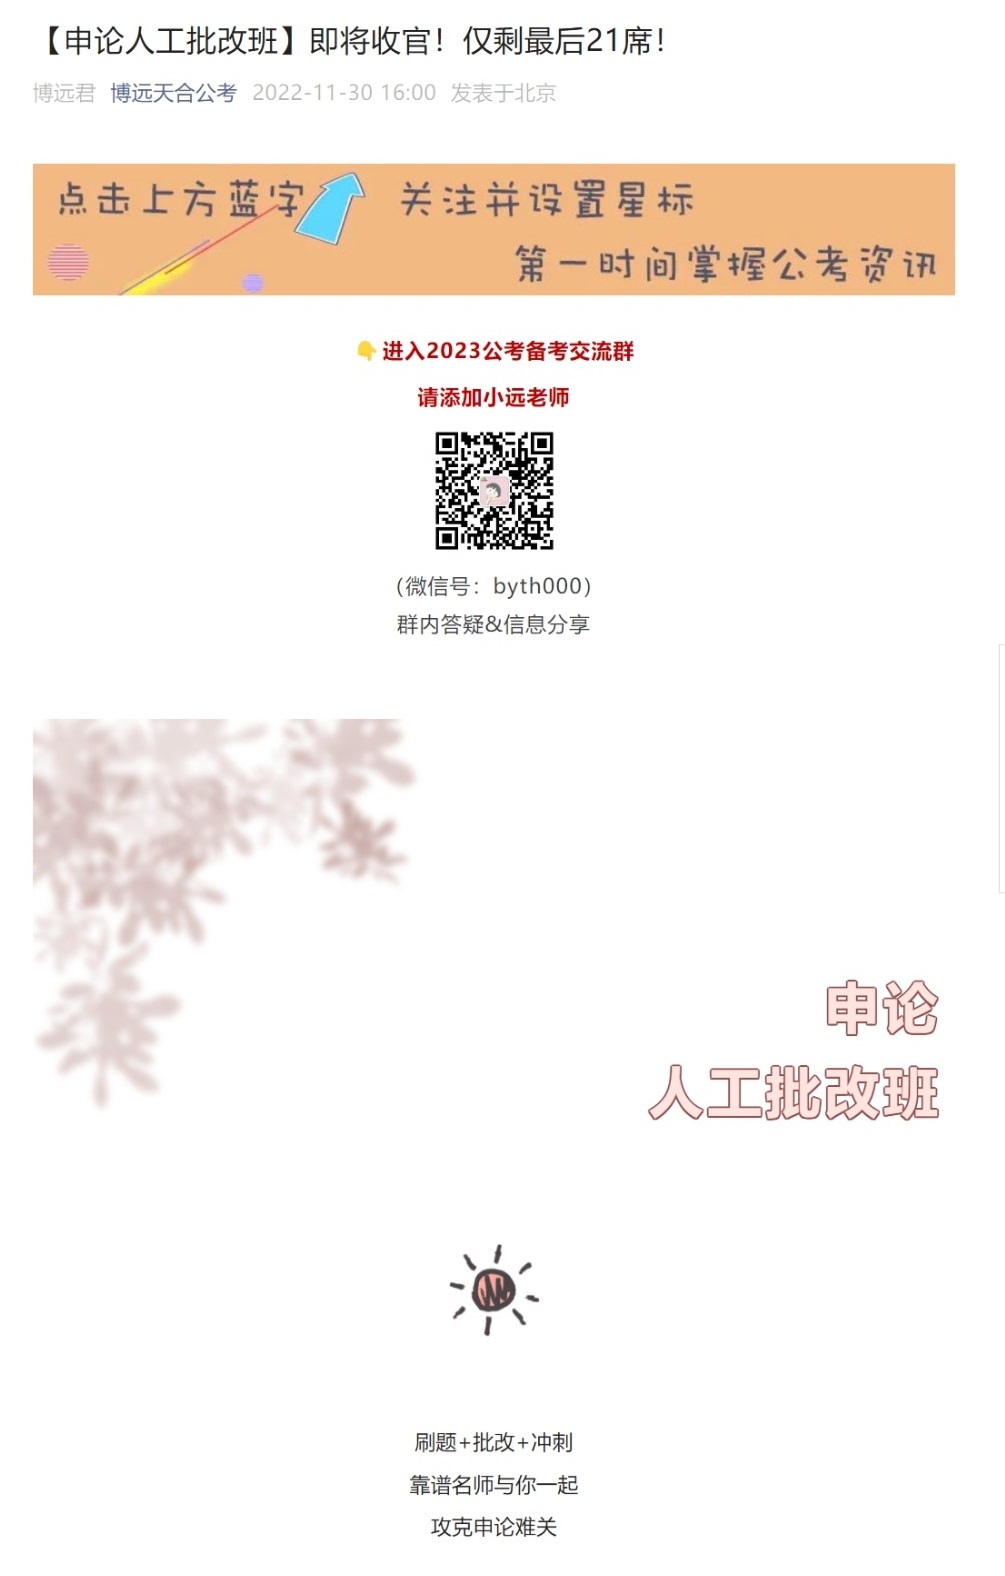 网页捕获_30-11-2022_183040_mp.weixin.qq.com.jpeg